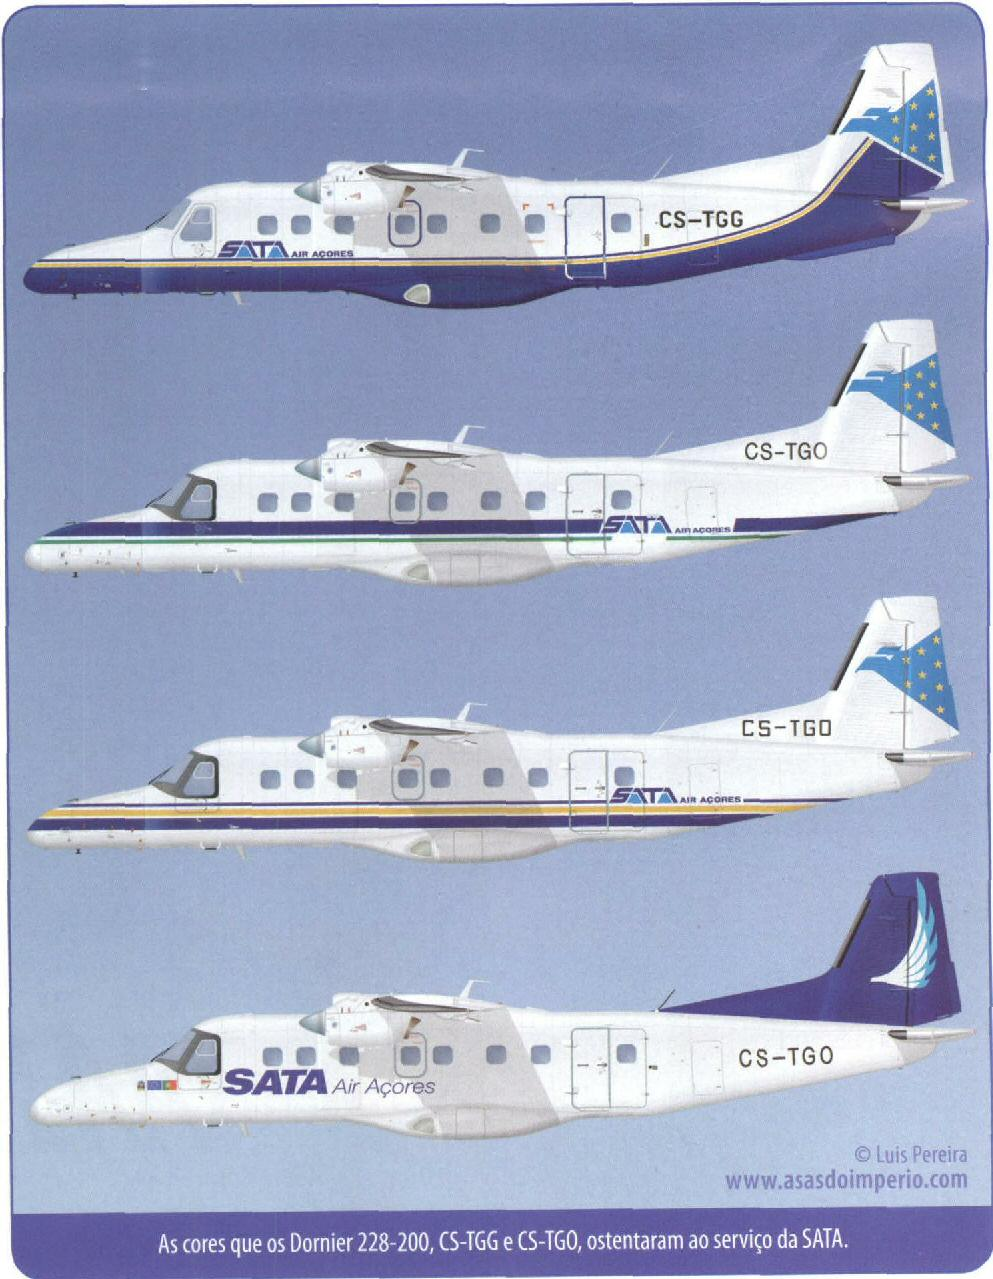 três HS-748 em operação na companhia (CS-TAP, CS-TAQ, CS-TAR).